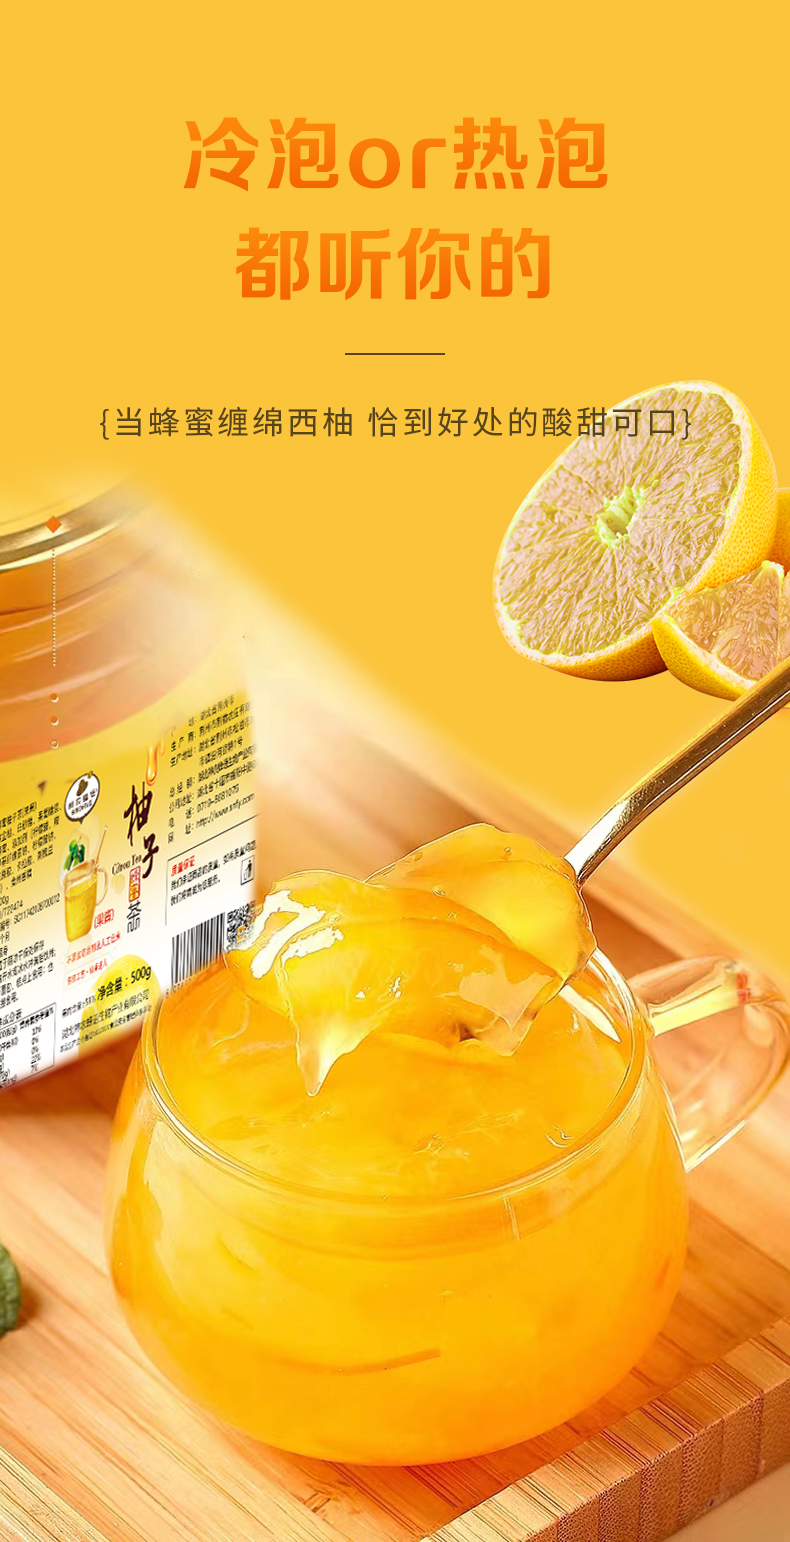 神农蜂语 蜂蜜柚子茶500g  新鲜果味茶冲饮品水果茶